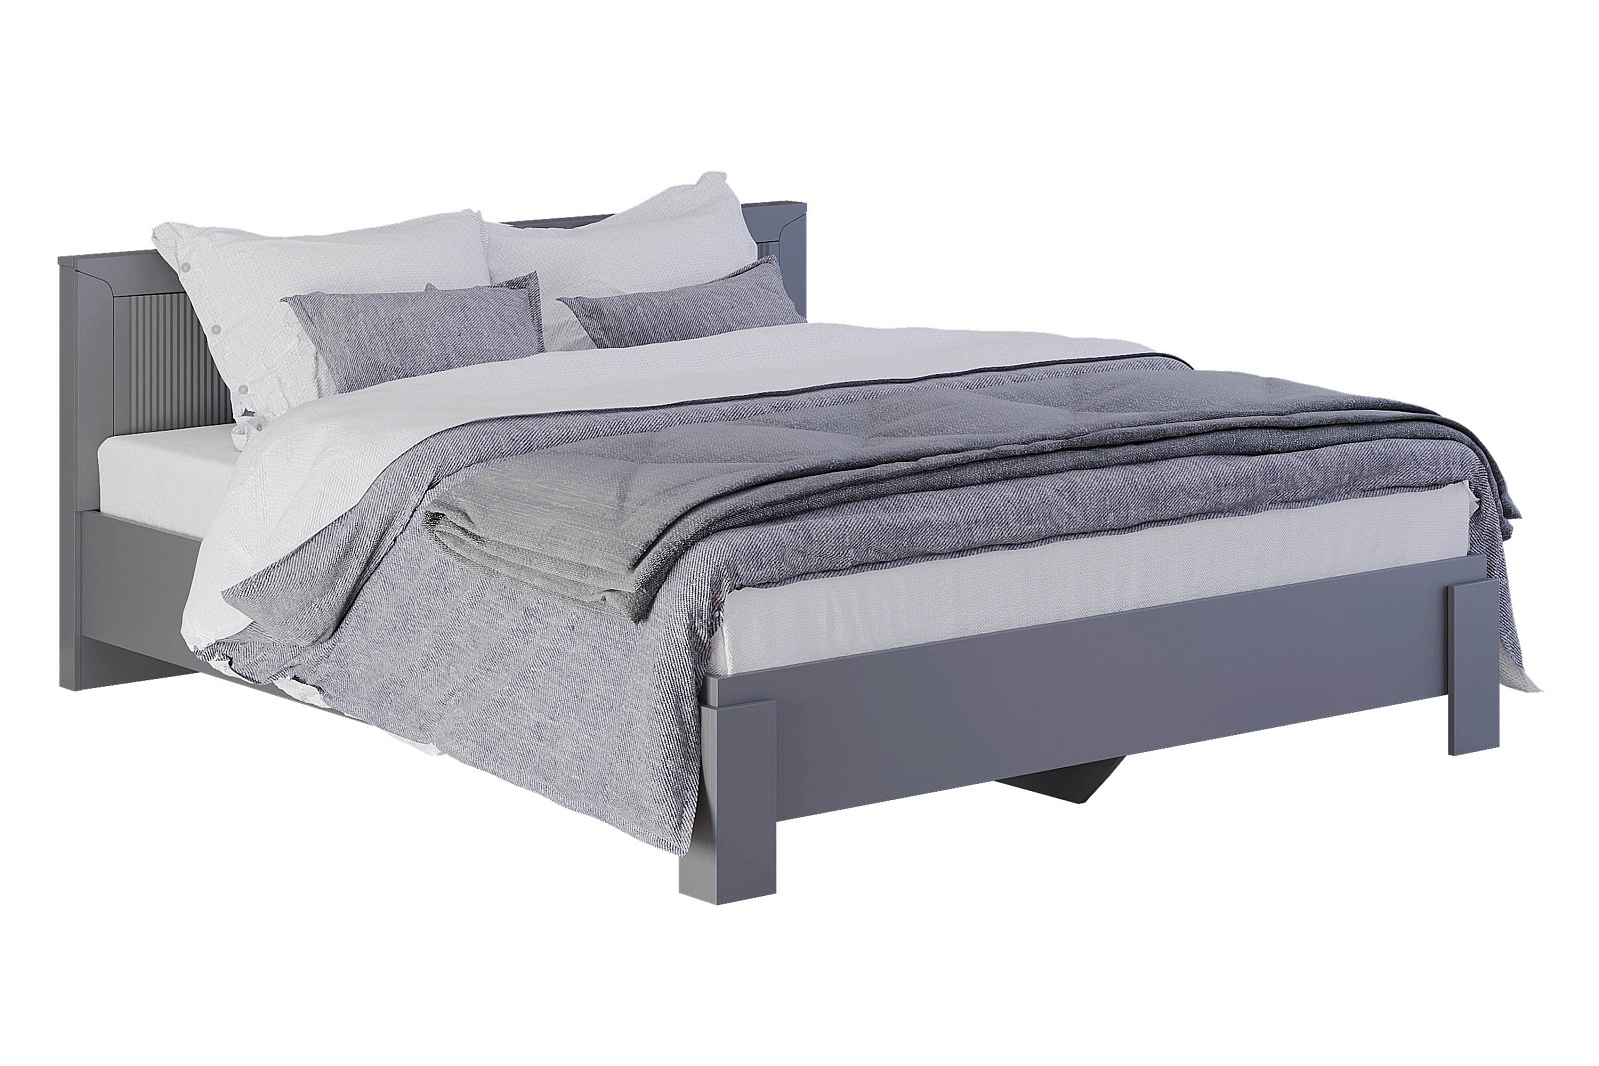 ТОРИС кровать 180 см (серый графит)